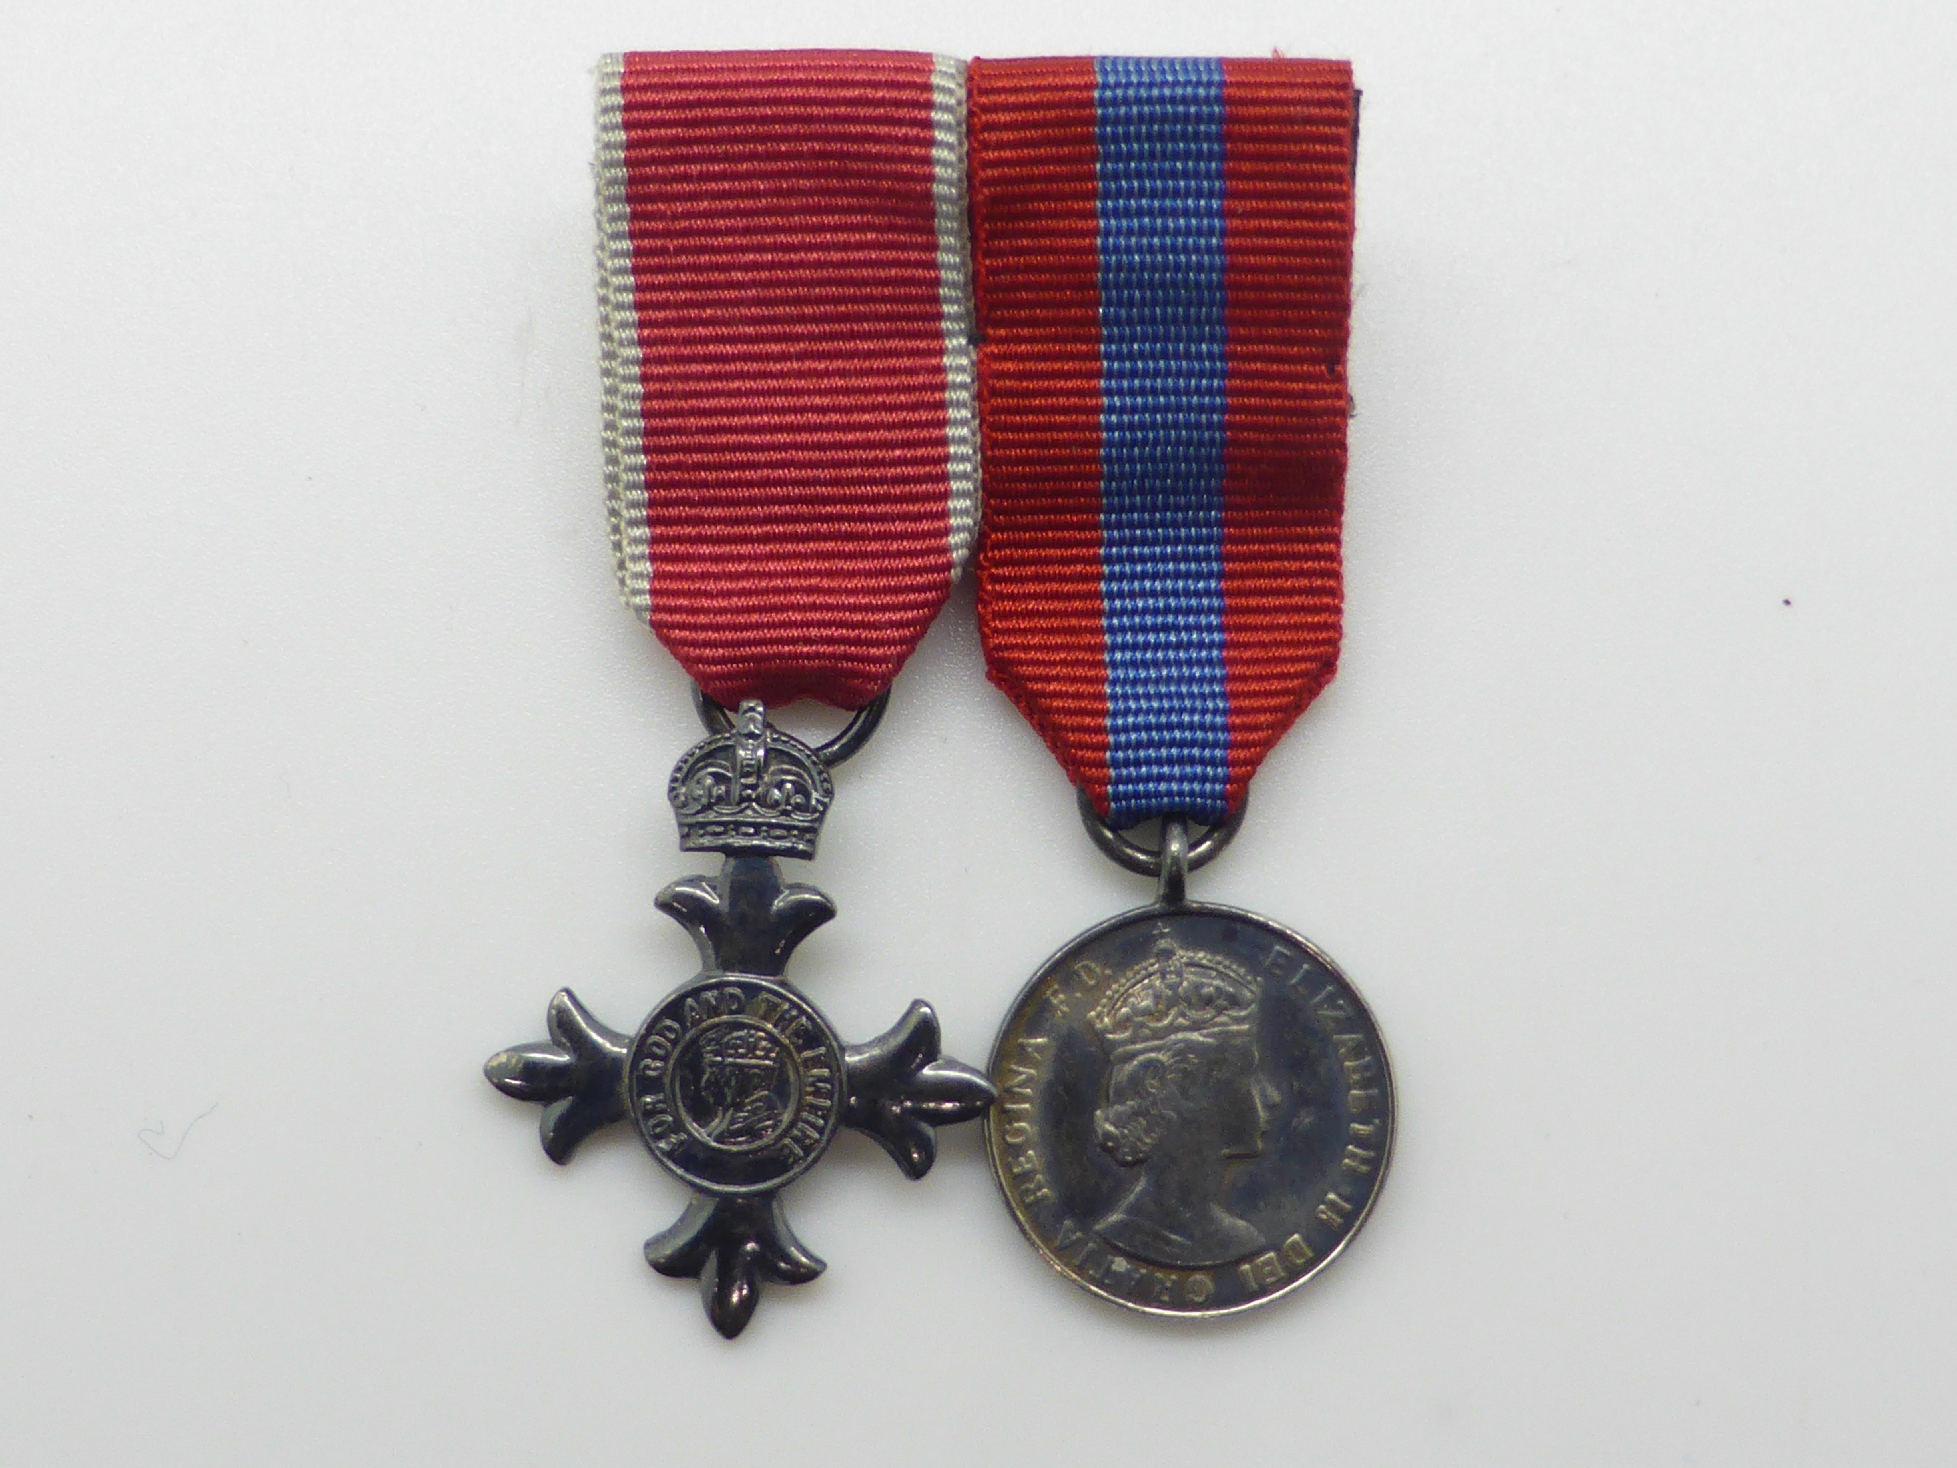 Elizabeth II Imperial Service Medal named to Mrs Jean Margaret Rose together with a WWII War Medal - Image 32 of 47